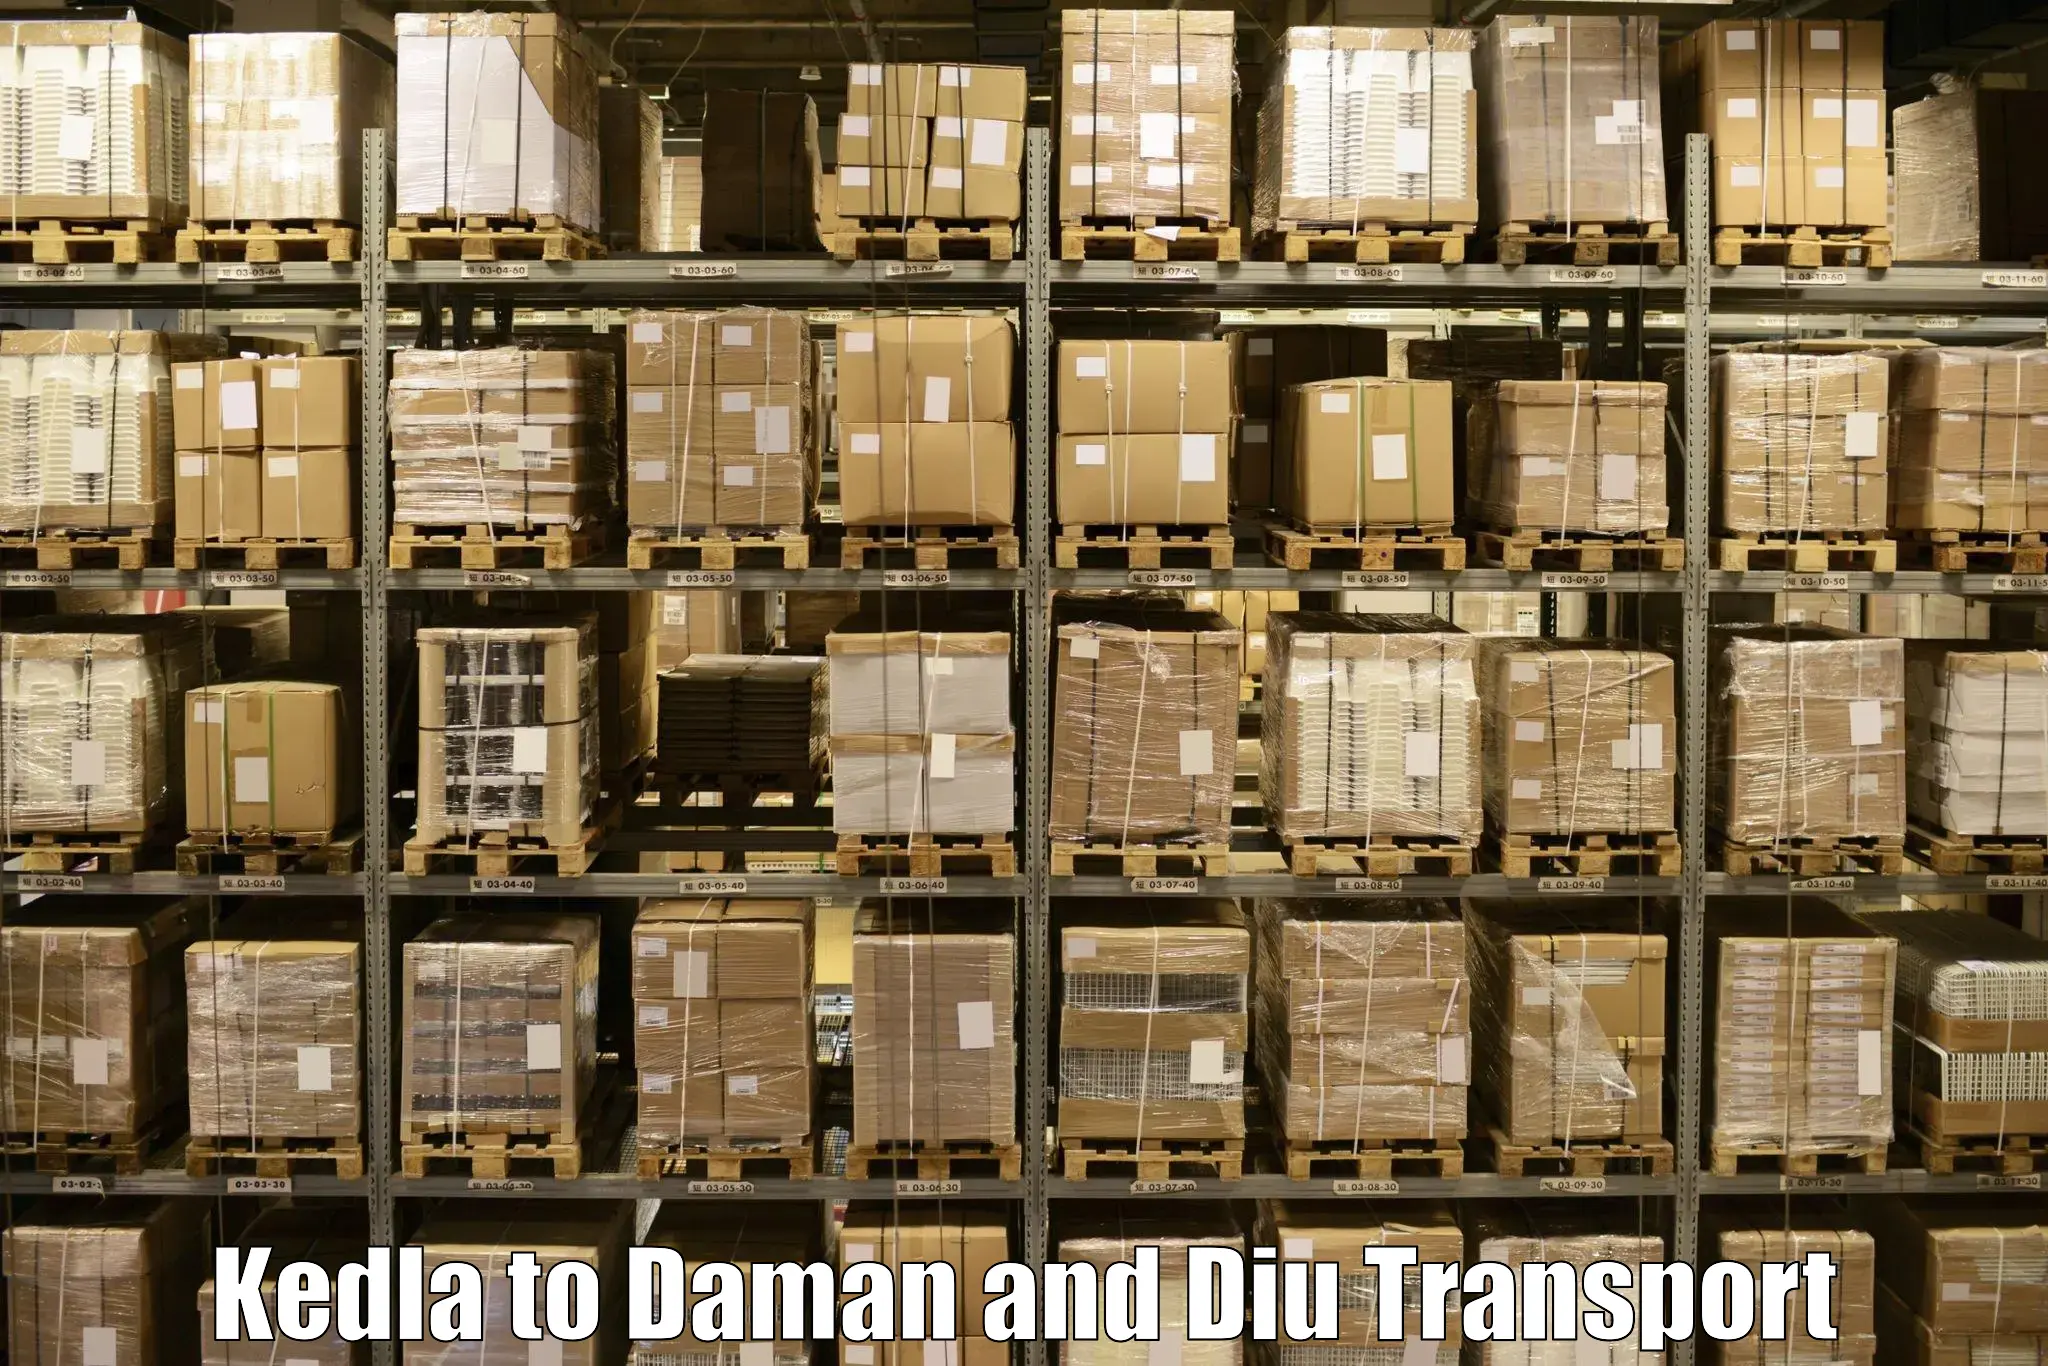 Bike shipping service Kedla to Daman